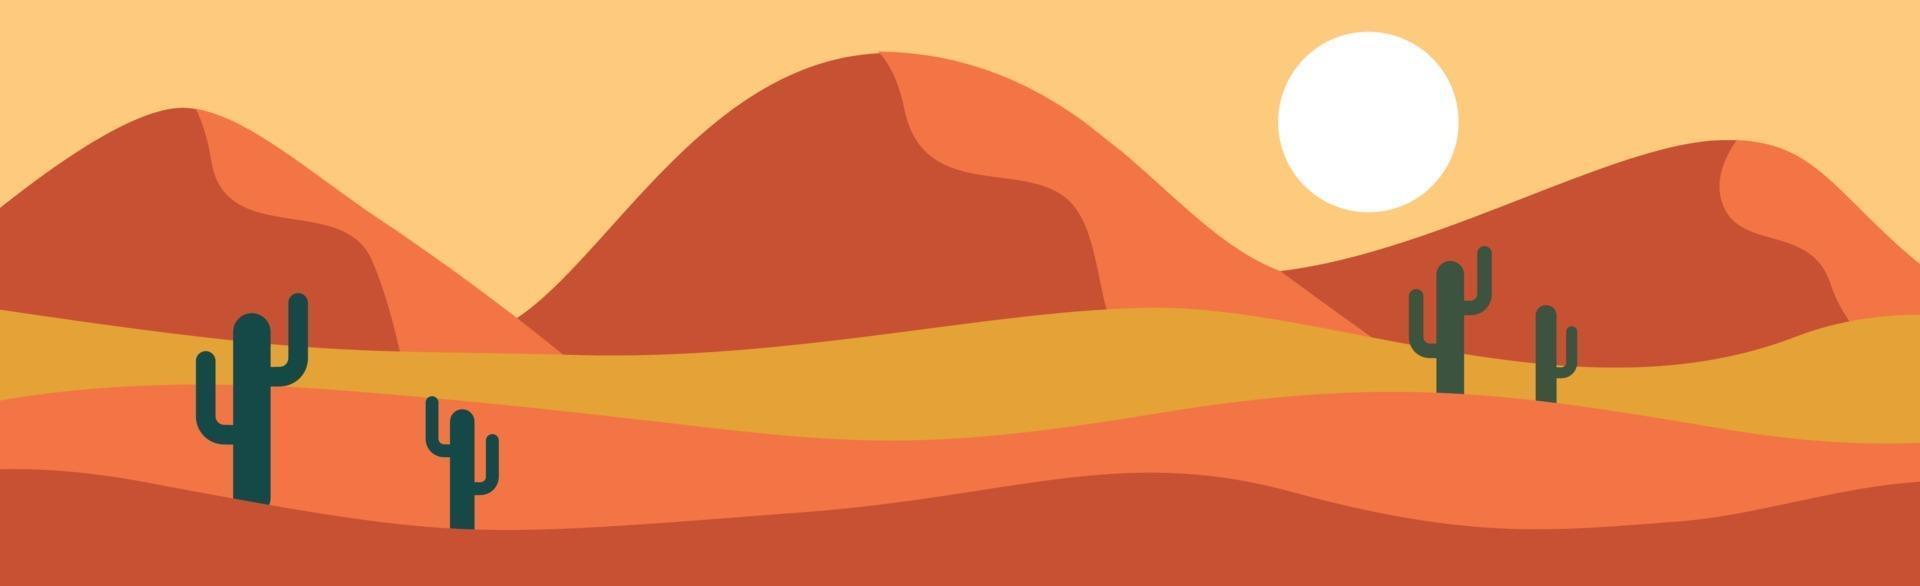 paisaje panorámico desierto de sabana soleado caliente - vector